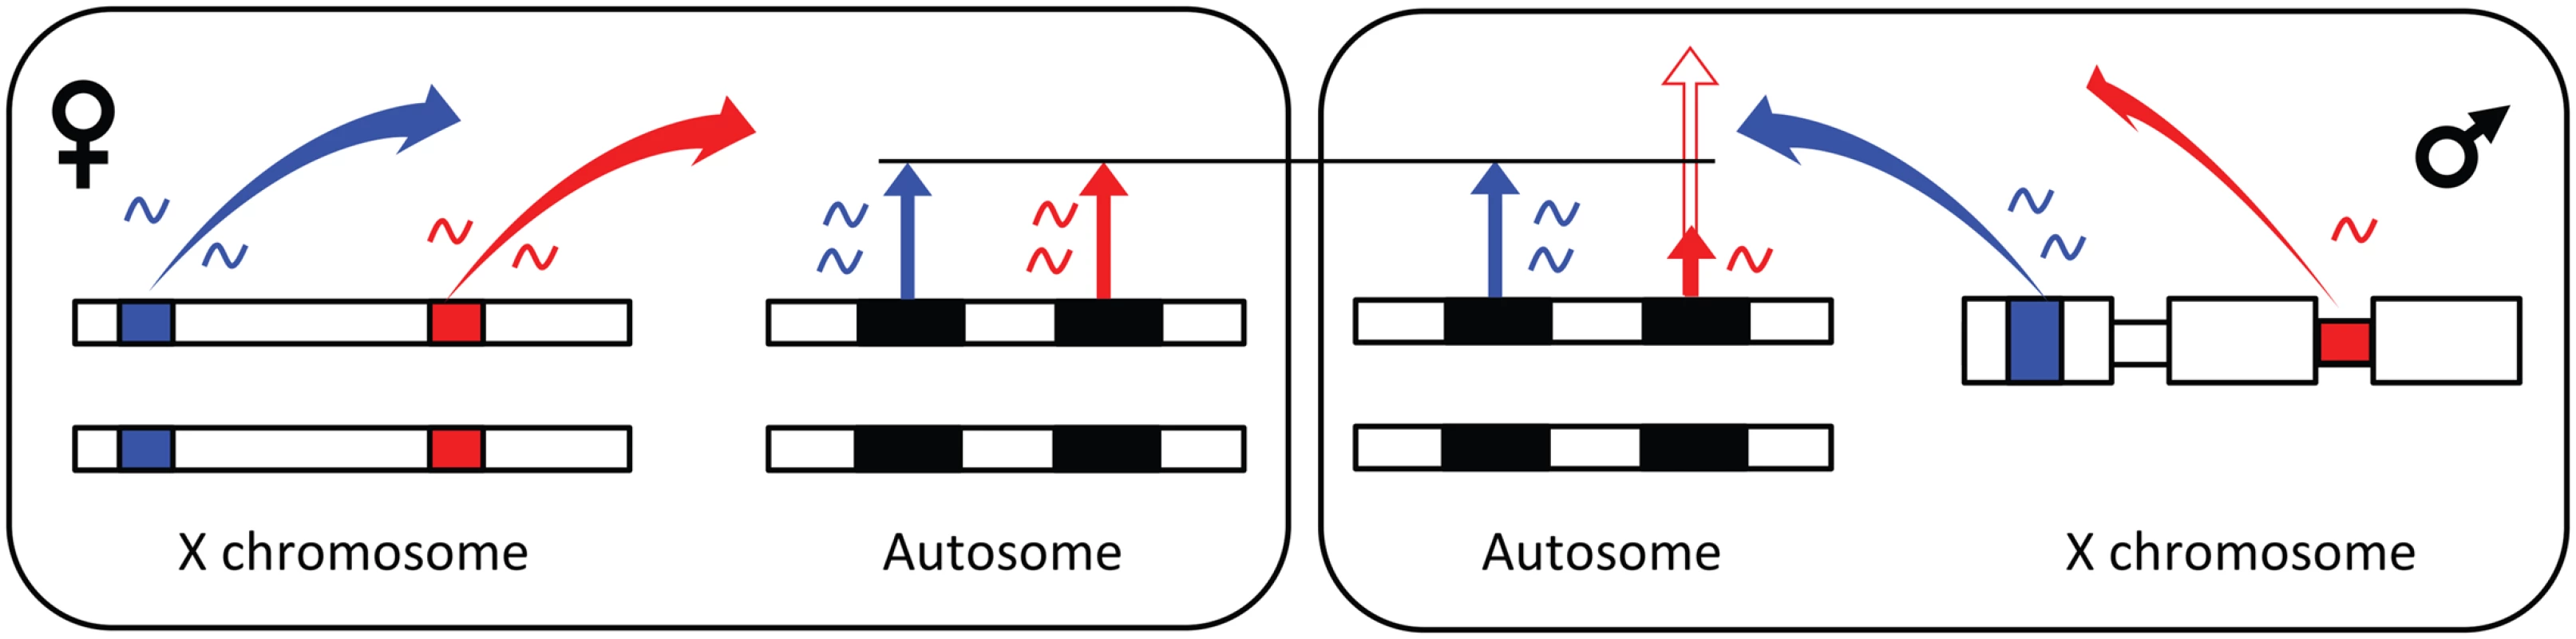 Model for X-linked <i>trans</i>-regulation of sex-biased gene expression.